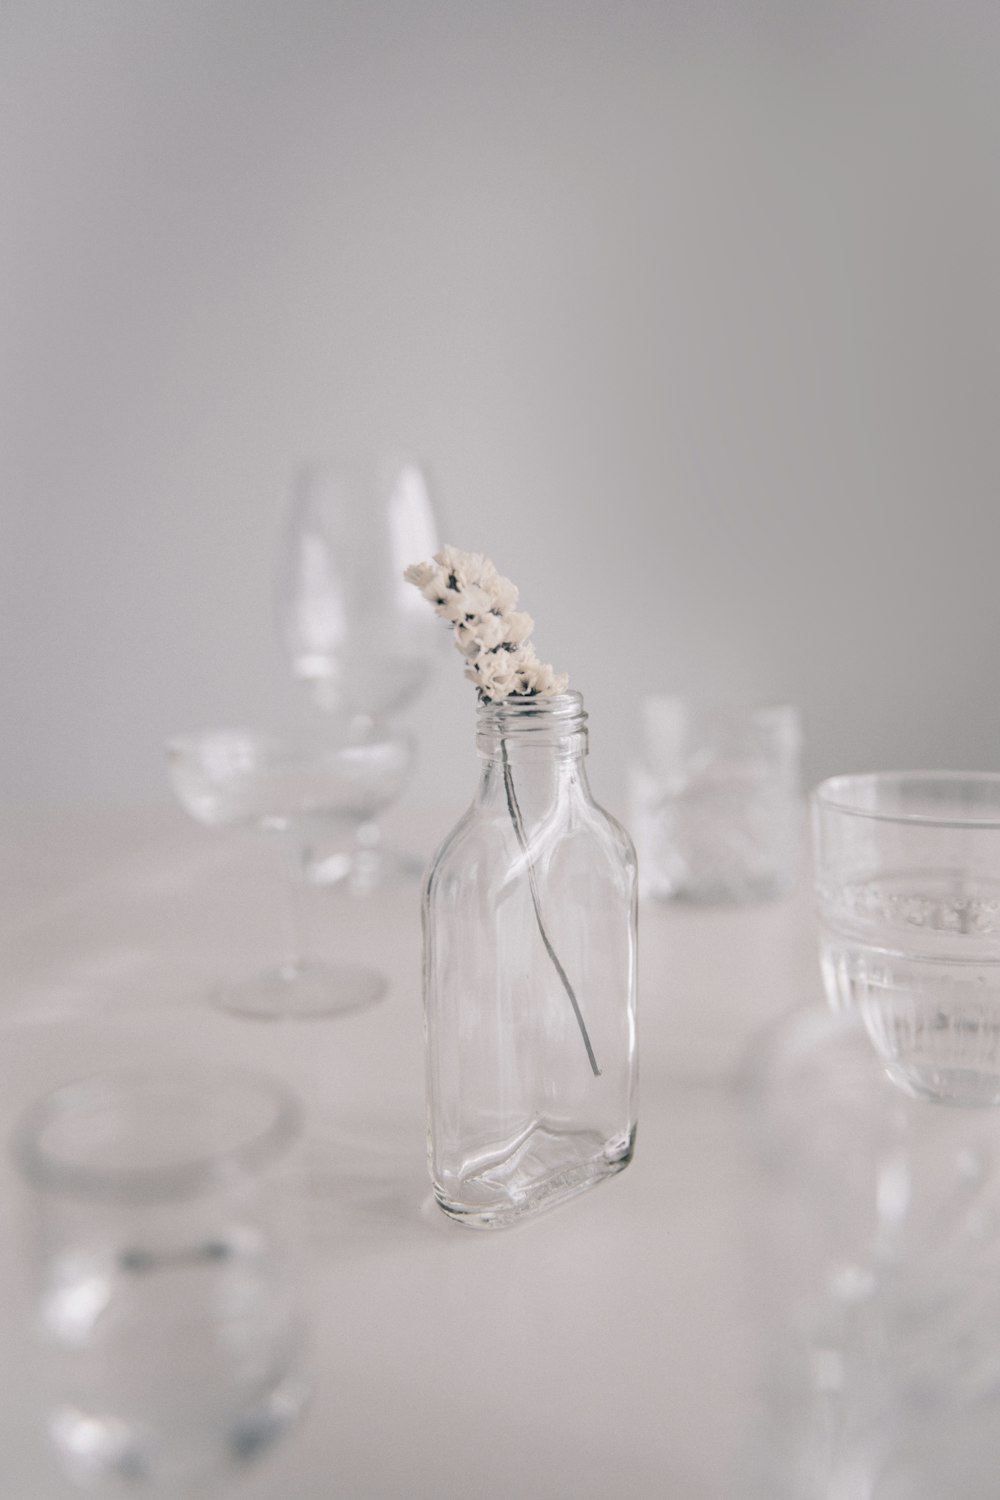 Botellas de vidrio fotos de stock, imágenes de Botellas de vidrio